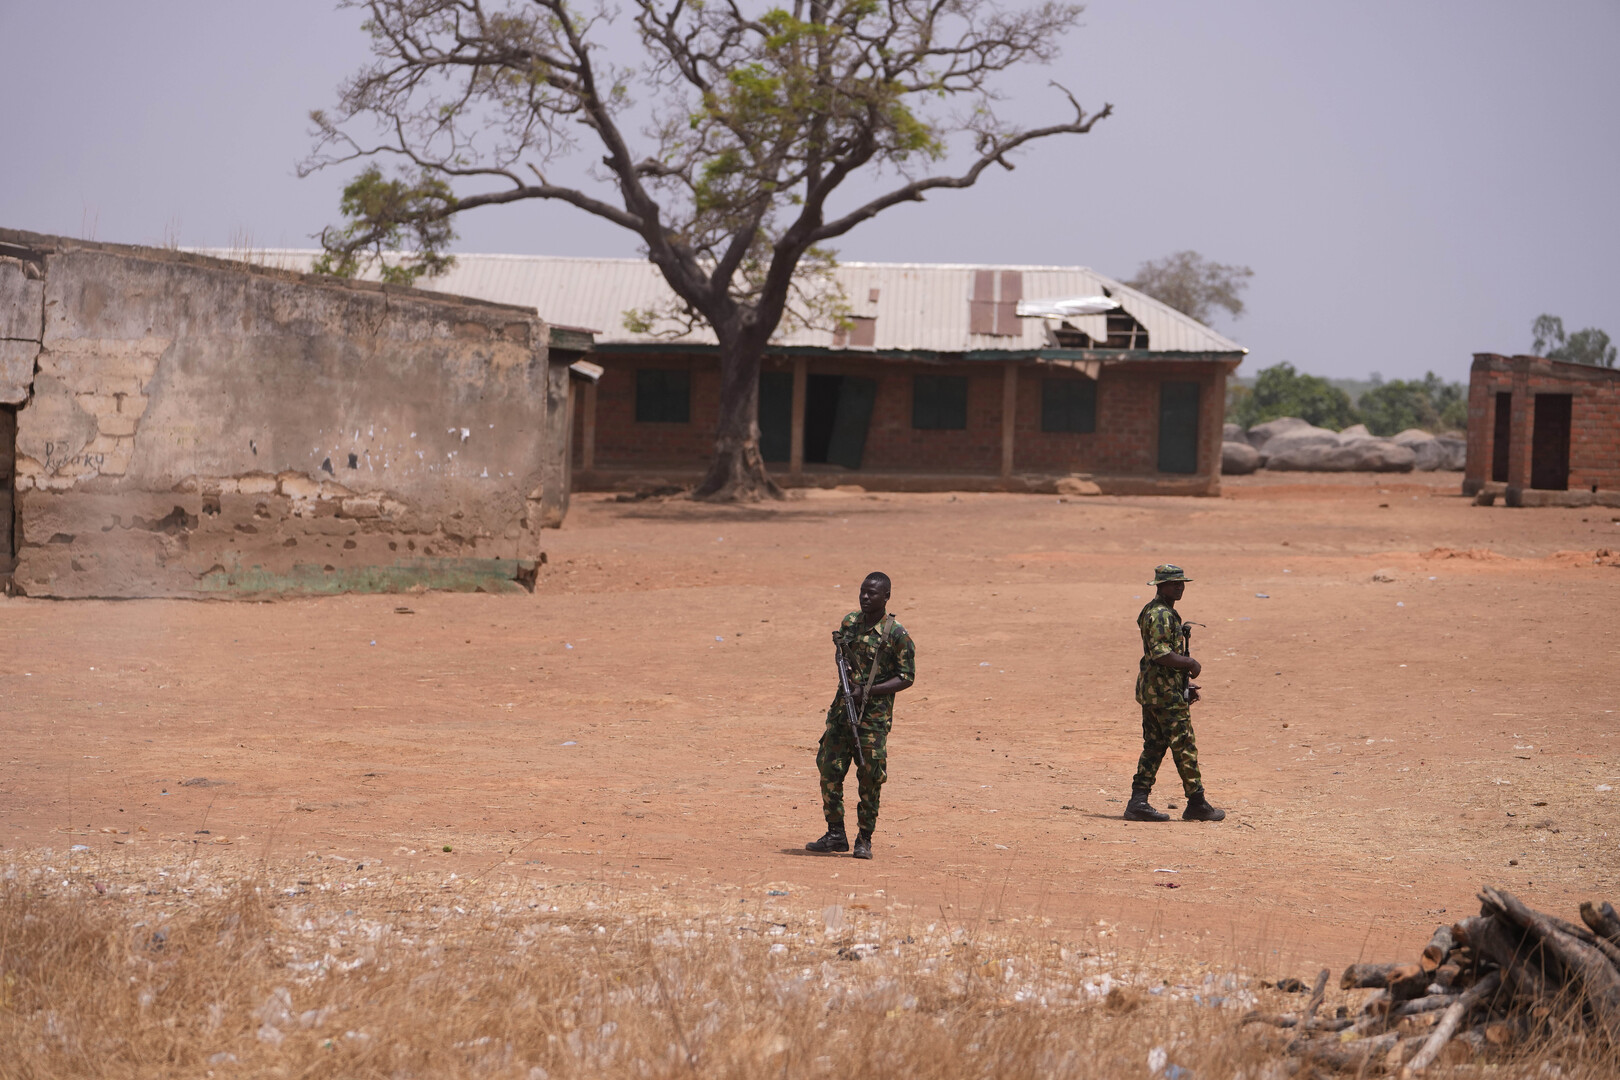 للمرة الثانية خلال 48 ساعة.. مسلحون يختطفون 15 طفلا من مدرسة شمال غربي نيجيريا